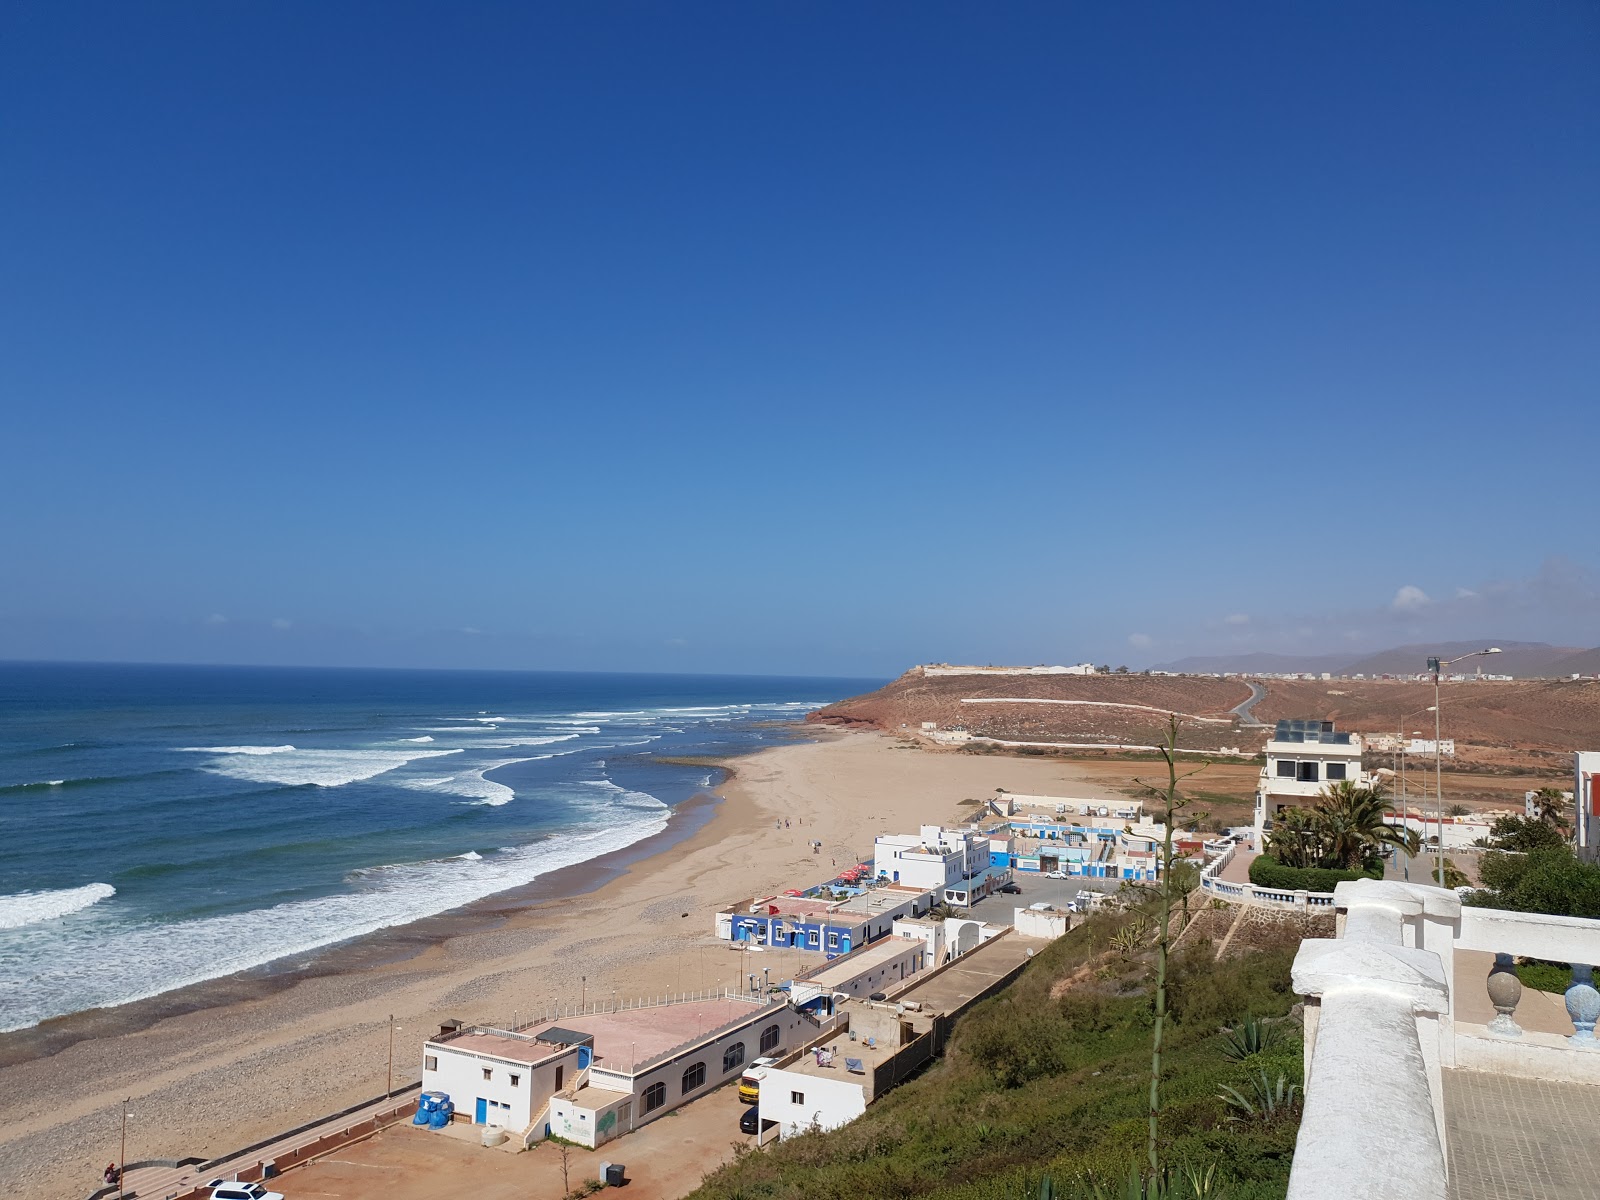 Plage Sidi Ifni'in fotoğrafı parlak kum yüzey ile